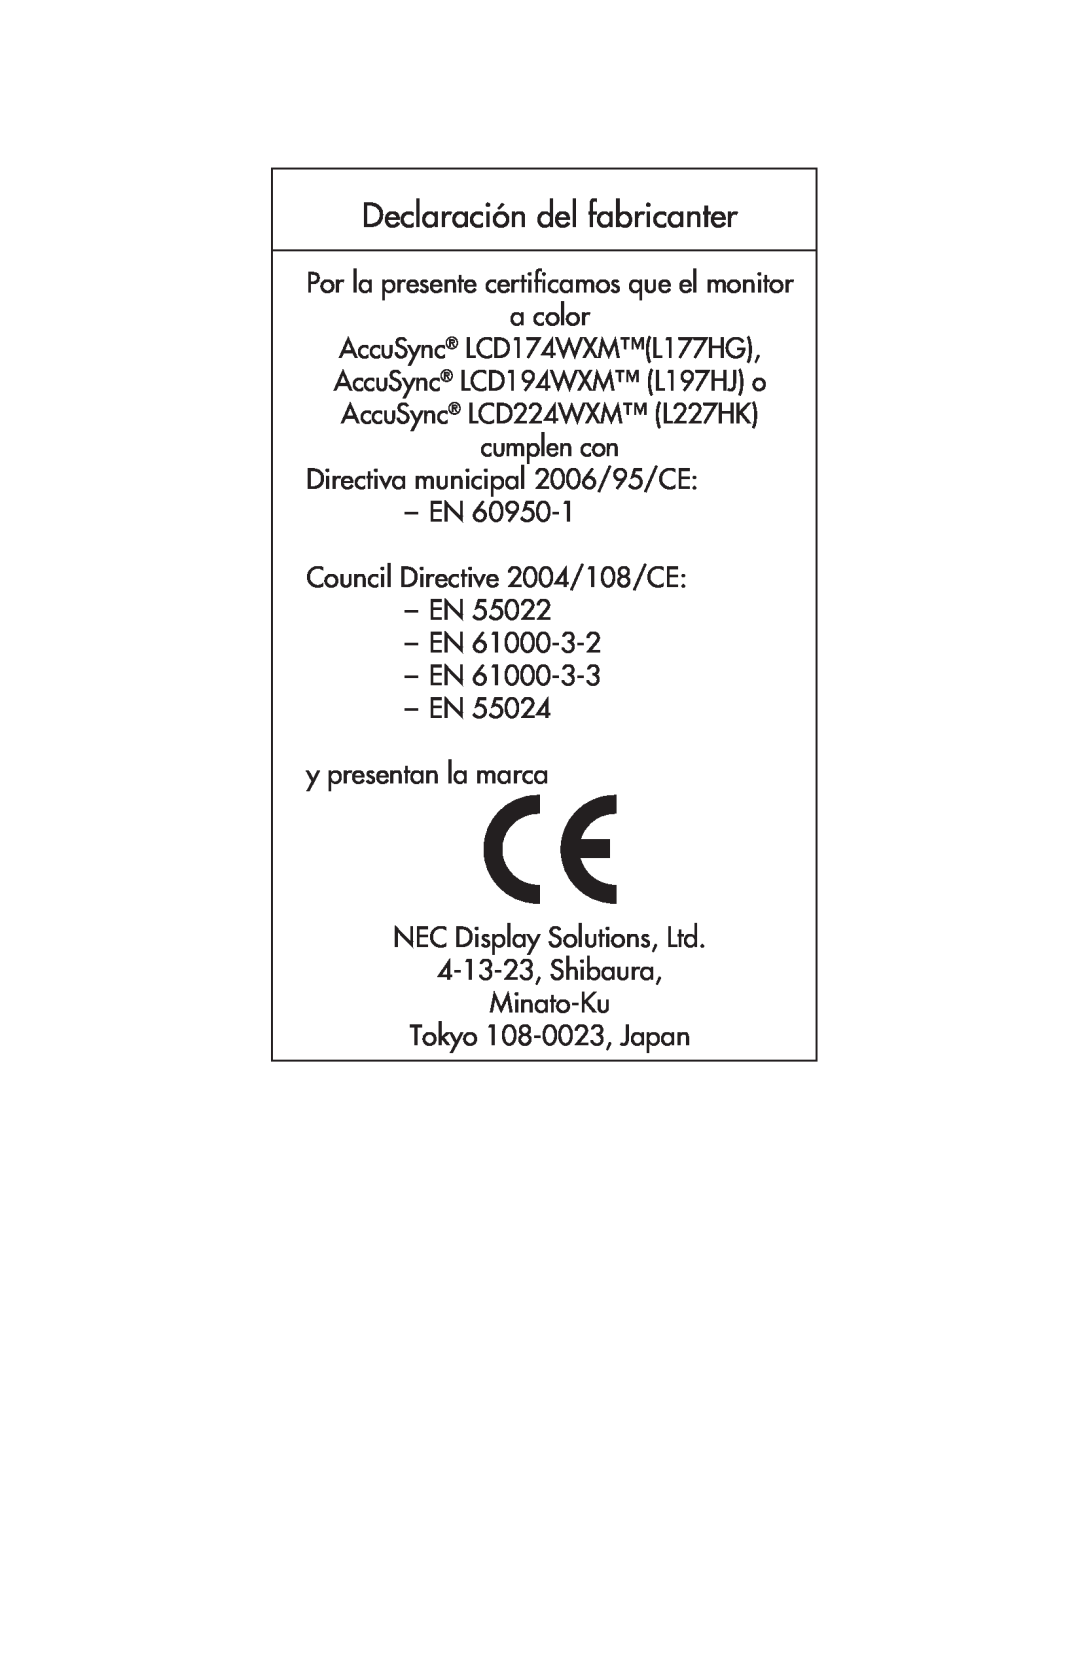 NEC LCD174WXM Declaración del fabricanter, Por la presente certiﬁcamos que el monitor a color, EN EN y presentan la marca 